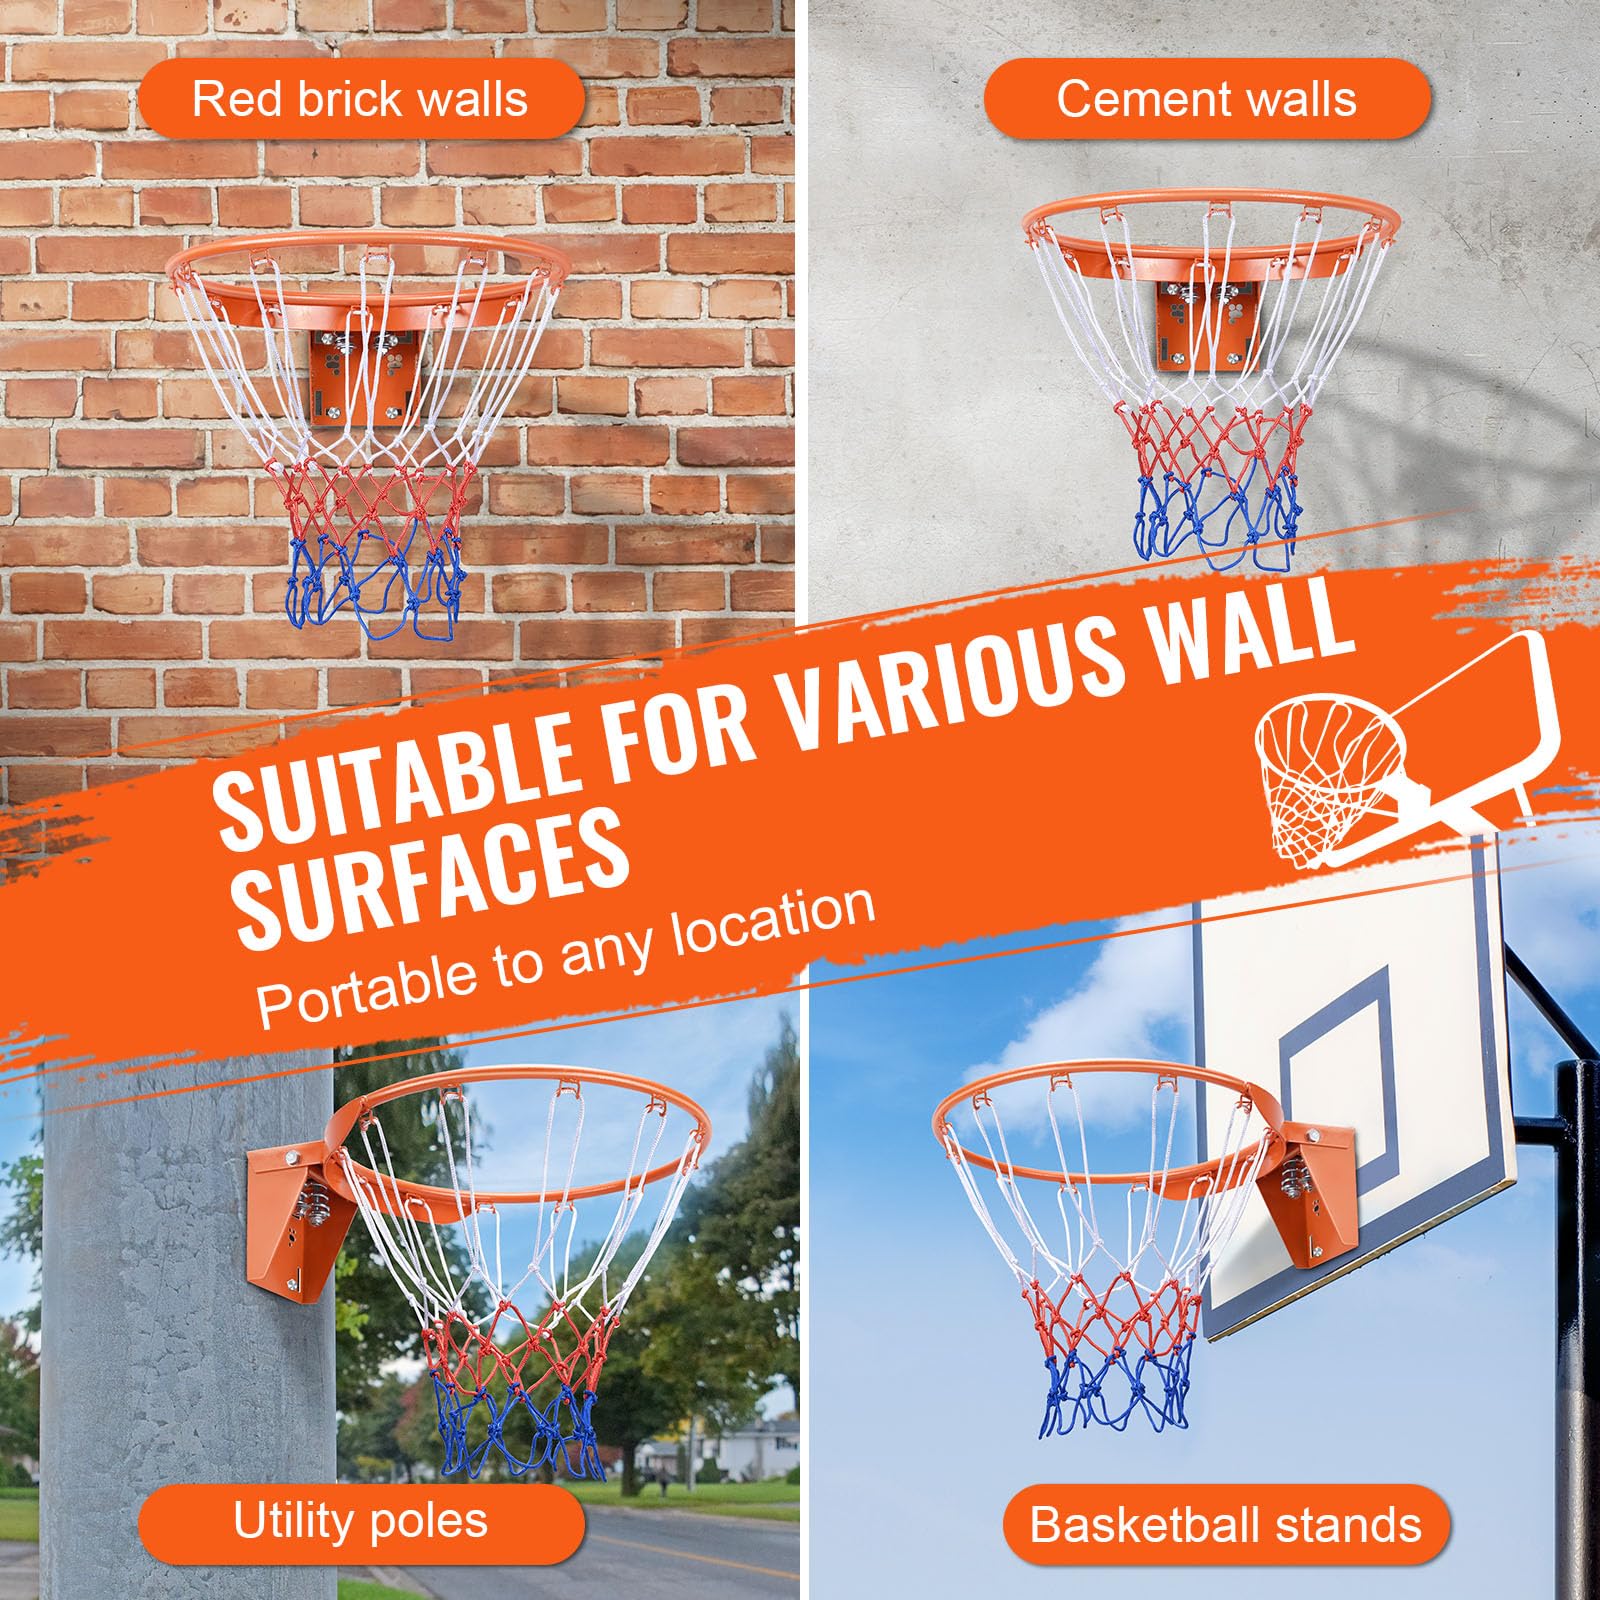 VEVOR Basketball Rim, Wall Door Mounted Basketball Hoop, Heavy Duty Q235 Basketball Flex Rim Goal Replacement with Net, Standard 18